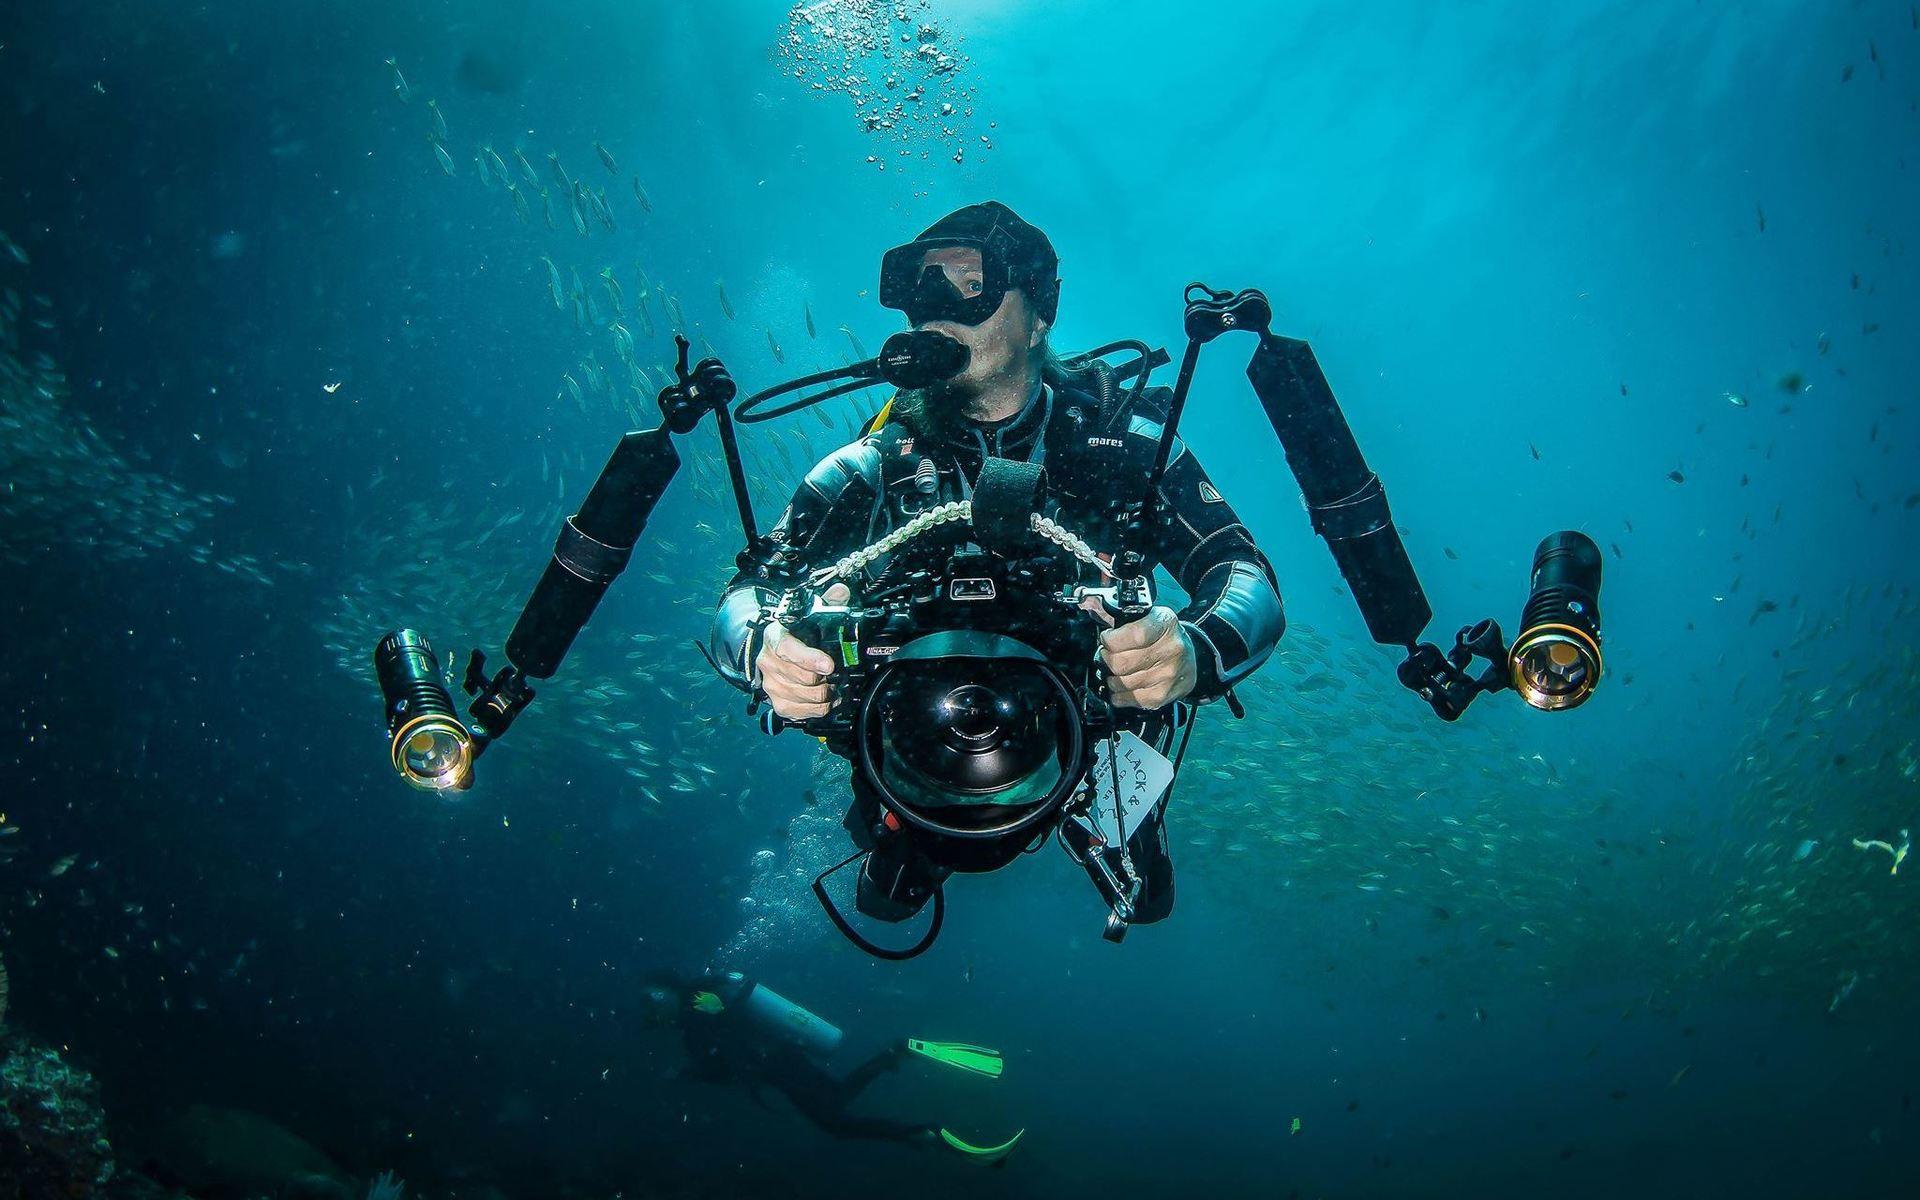 Här syns den utrustning som Nove Nyberg filmar med under sina dyk.